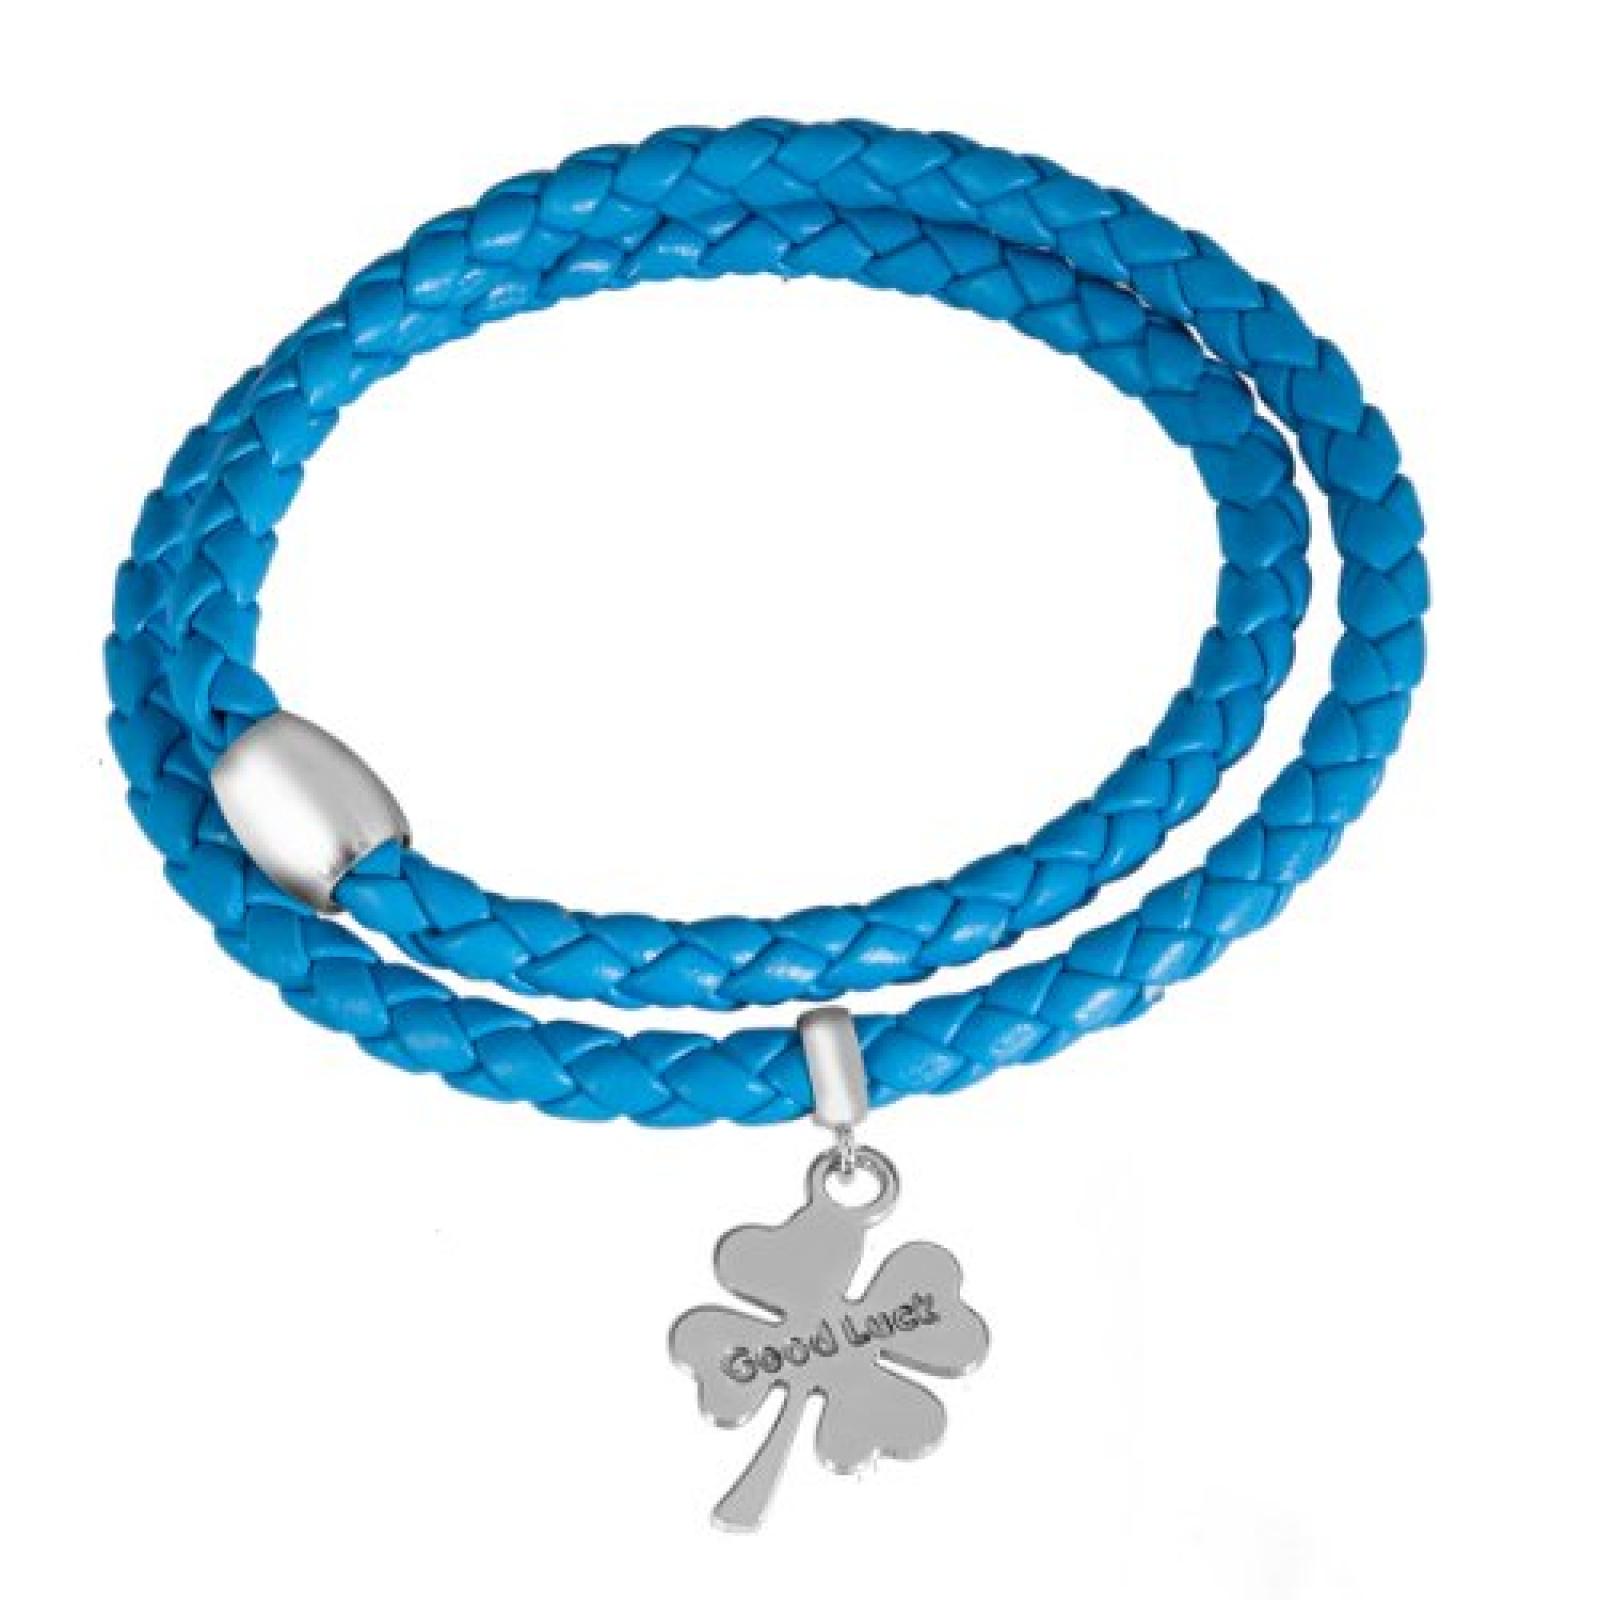 Bella Donna Damen-Armband KleeblatteinhÃ¤nger Leder blau Magnetverschluss 925 Sterling Silber 77760009 